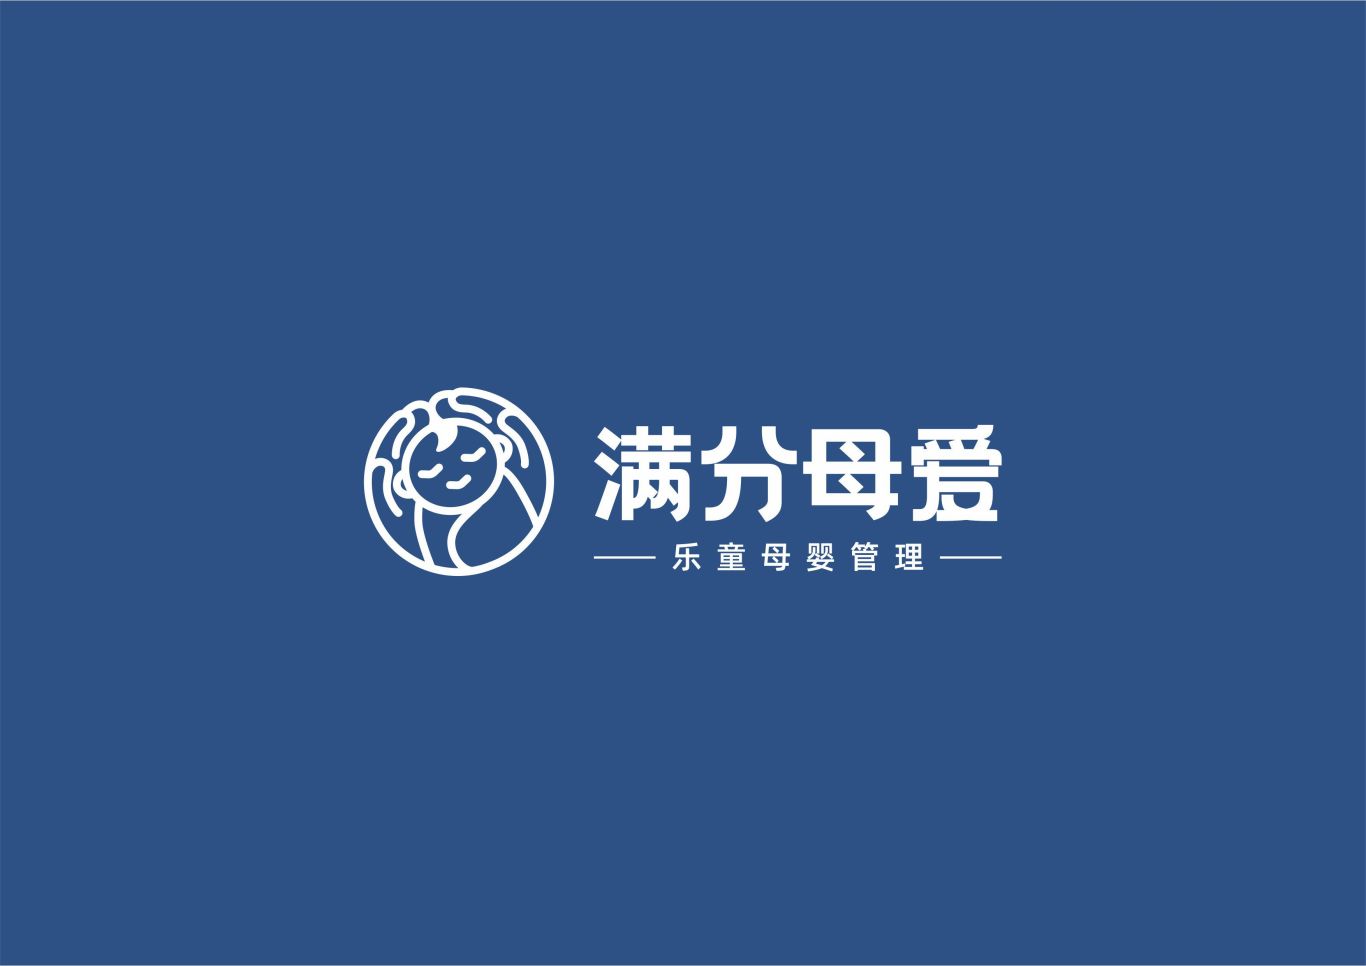 滿分母愛VI—月子服務管理行業logo圖1